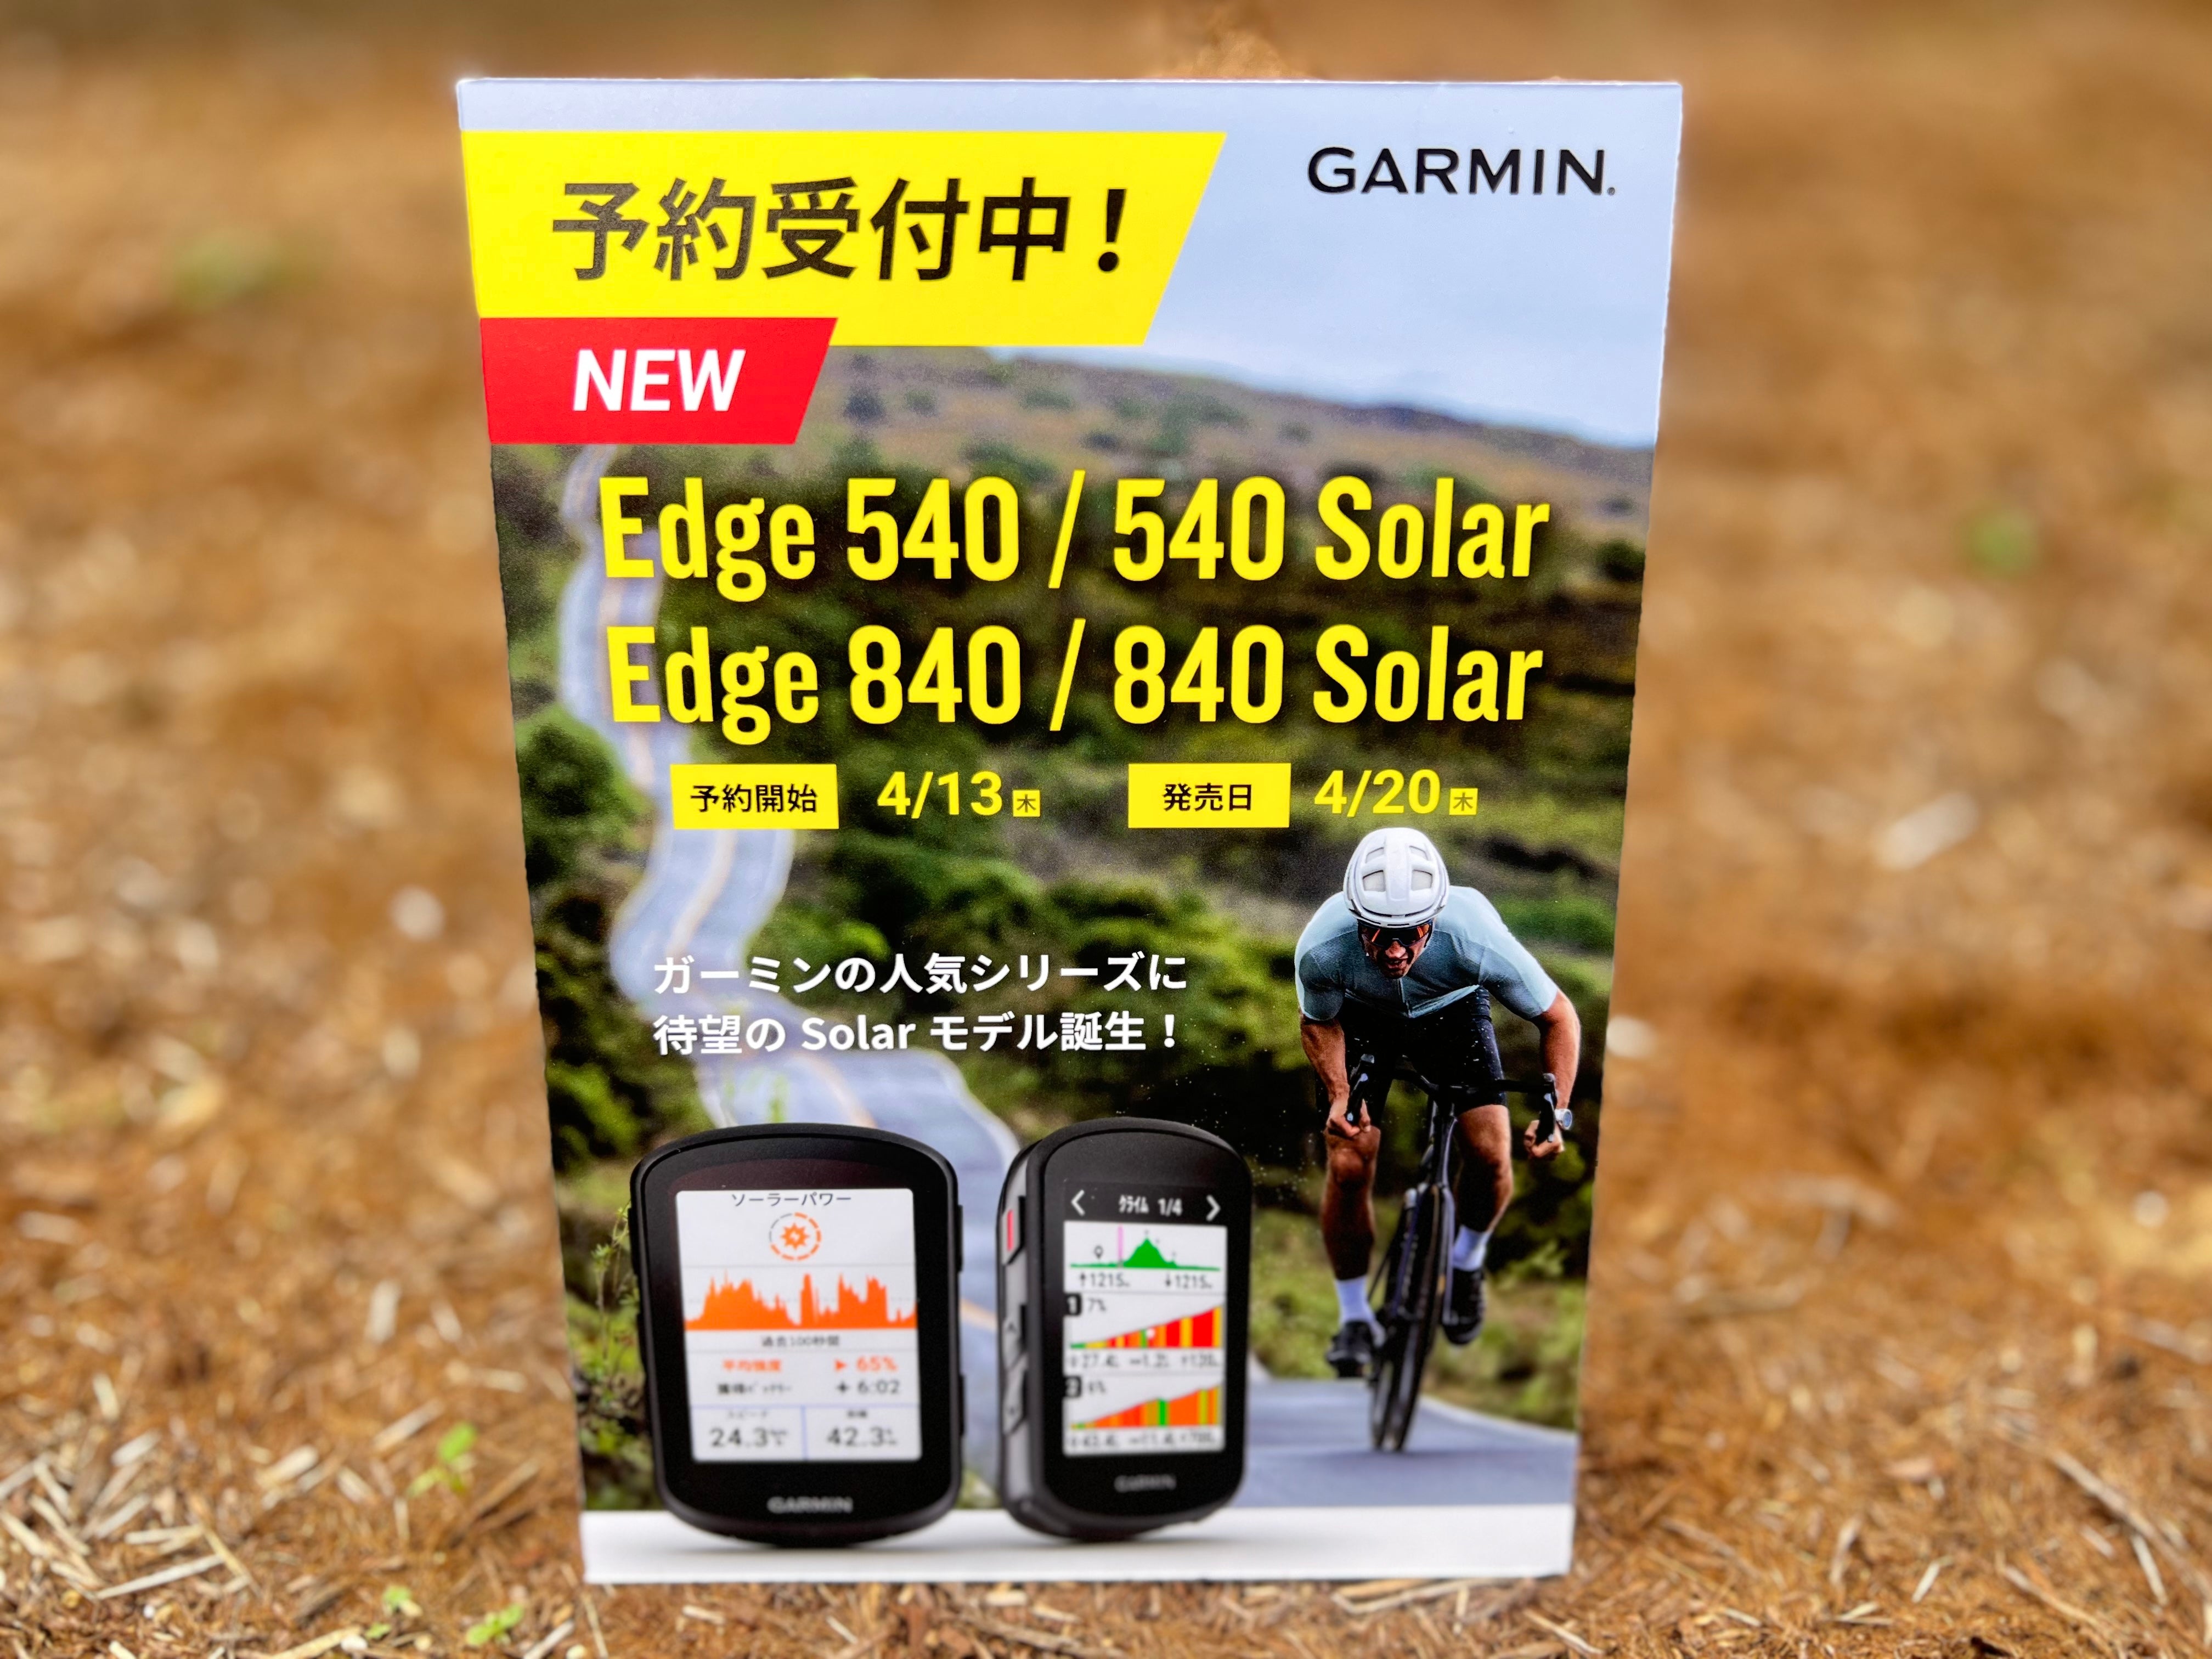 Garmin GPSサイクルコンピューター 「Edge」シリーズ 最新モデル登場